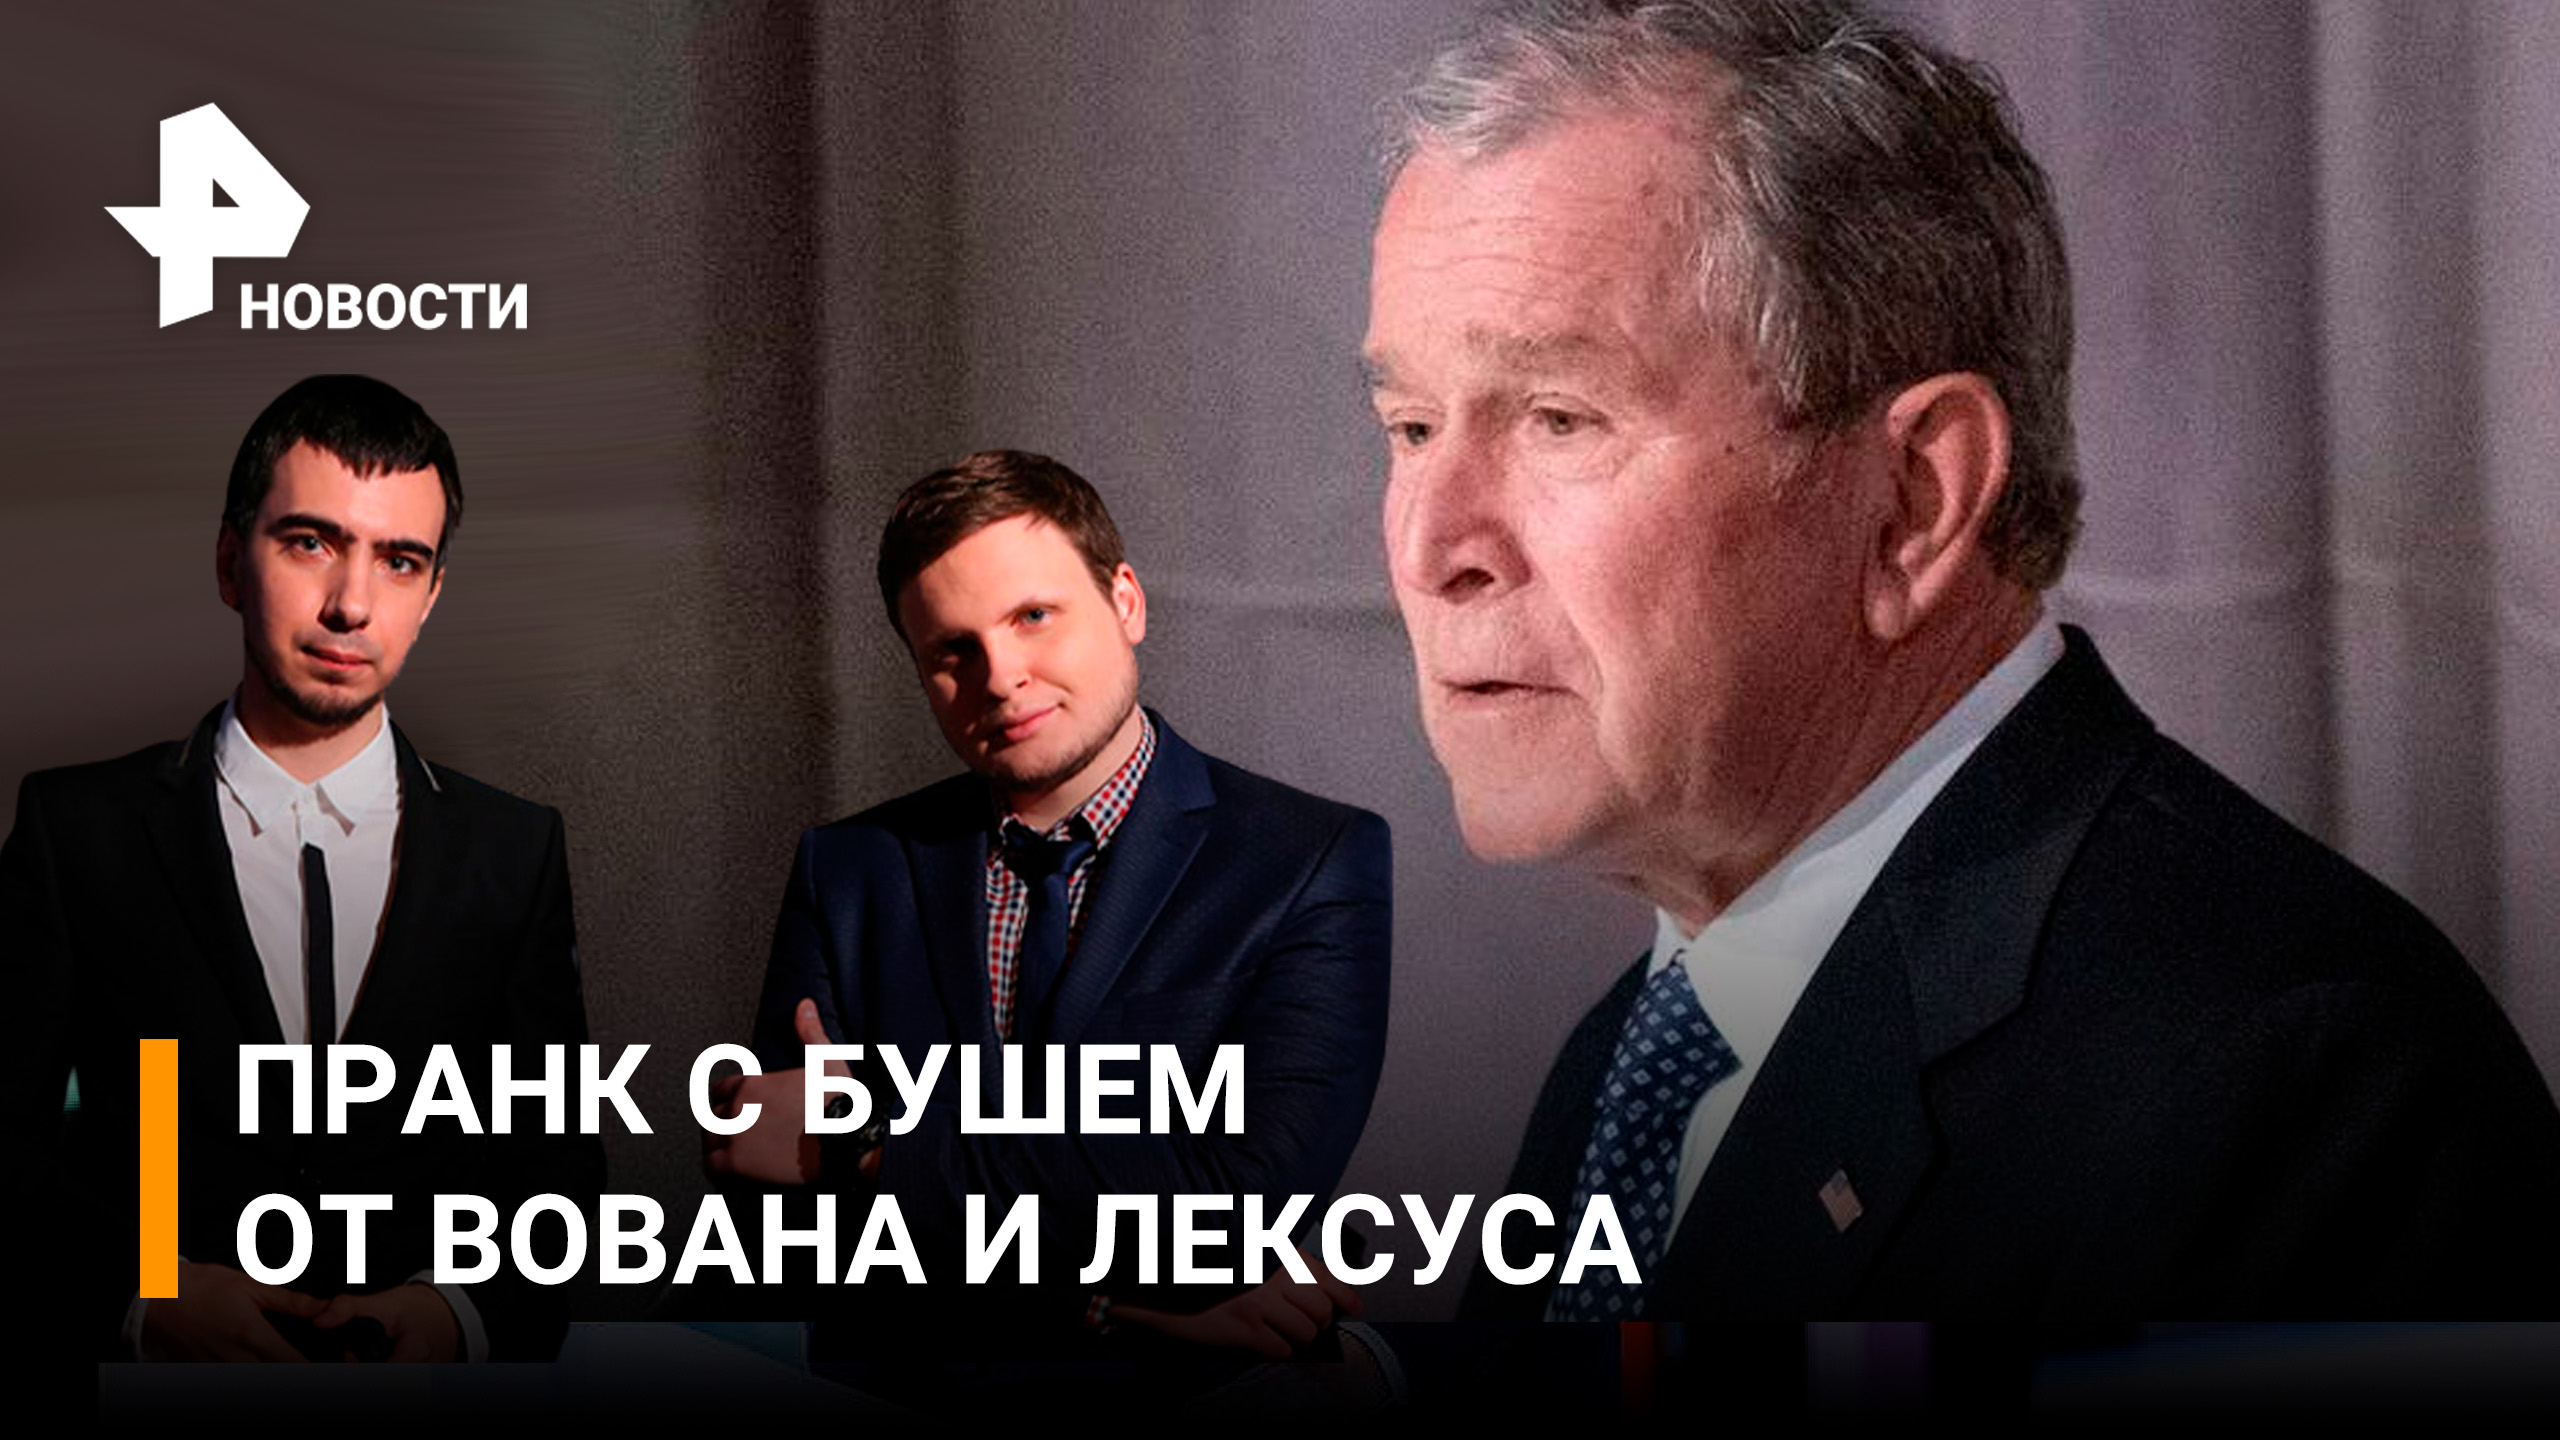 "Путин резко изменился": тизер пранка с экс-президентом США Бушем от Вована и Лексуса / РЕН Новости